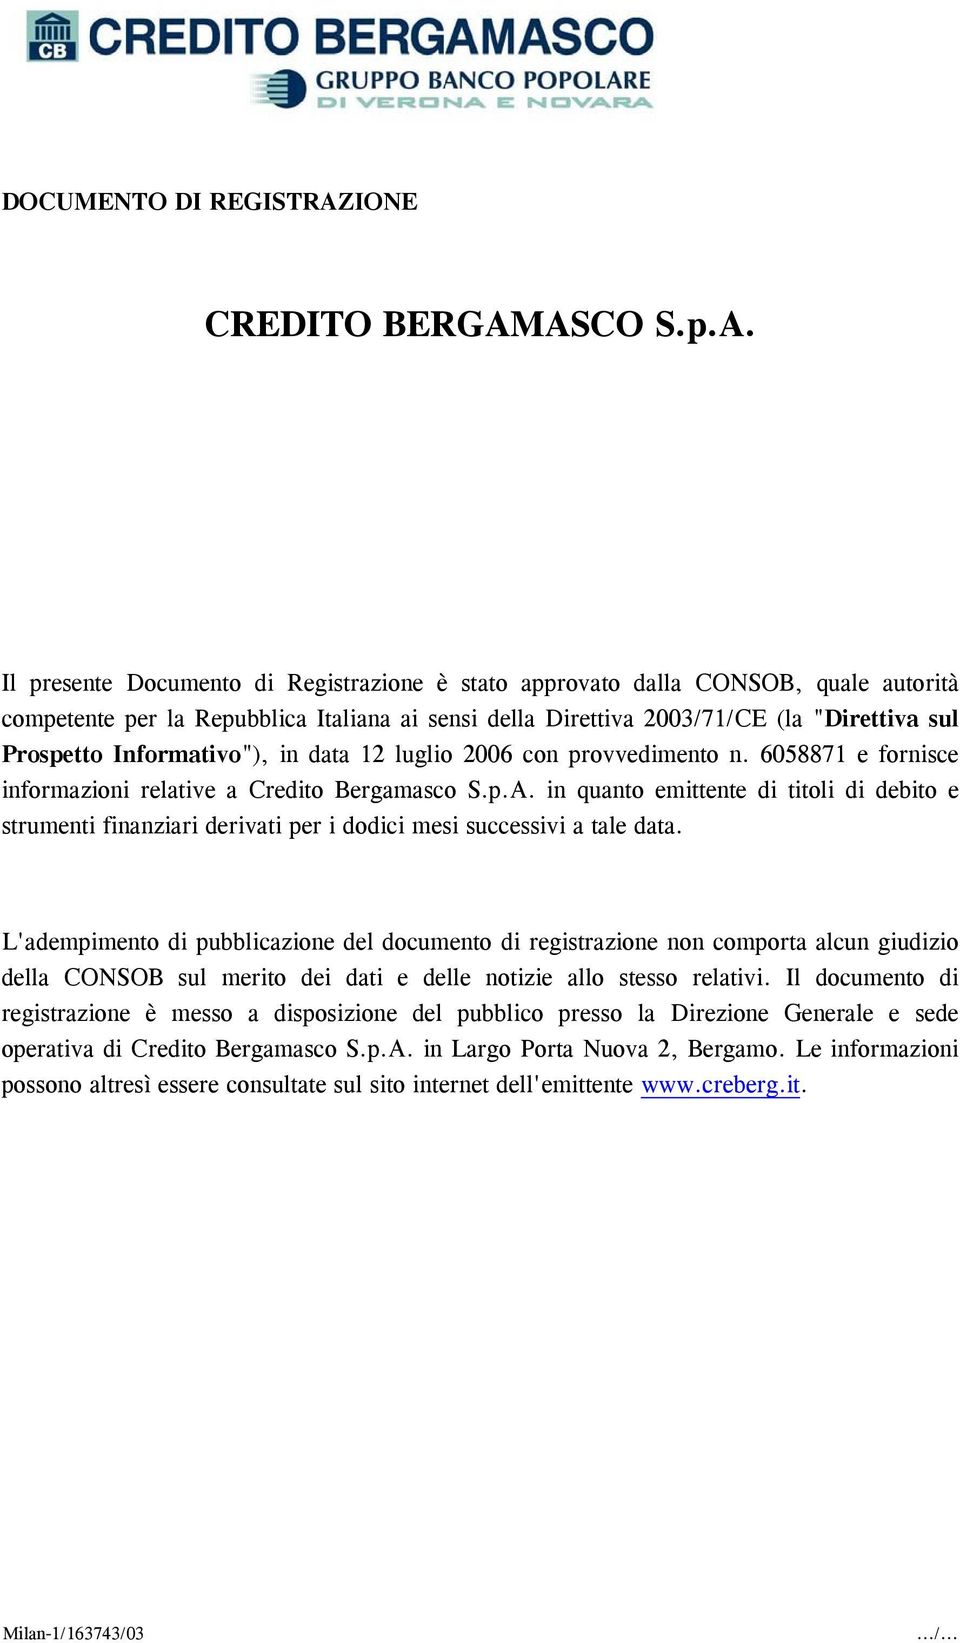 ASCO S.p.A. Il presente Documento di Registrazione è stato approvato dalla CONSOB, quale autorità competente per la Repubblica Italiana ai sensi della Direttiva 2003/71/CE (la "Direttiva sul